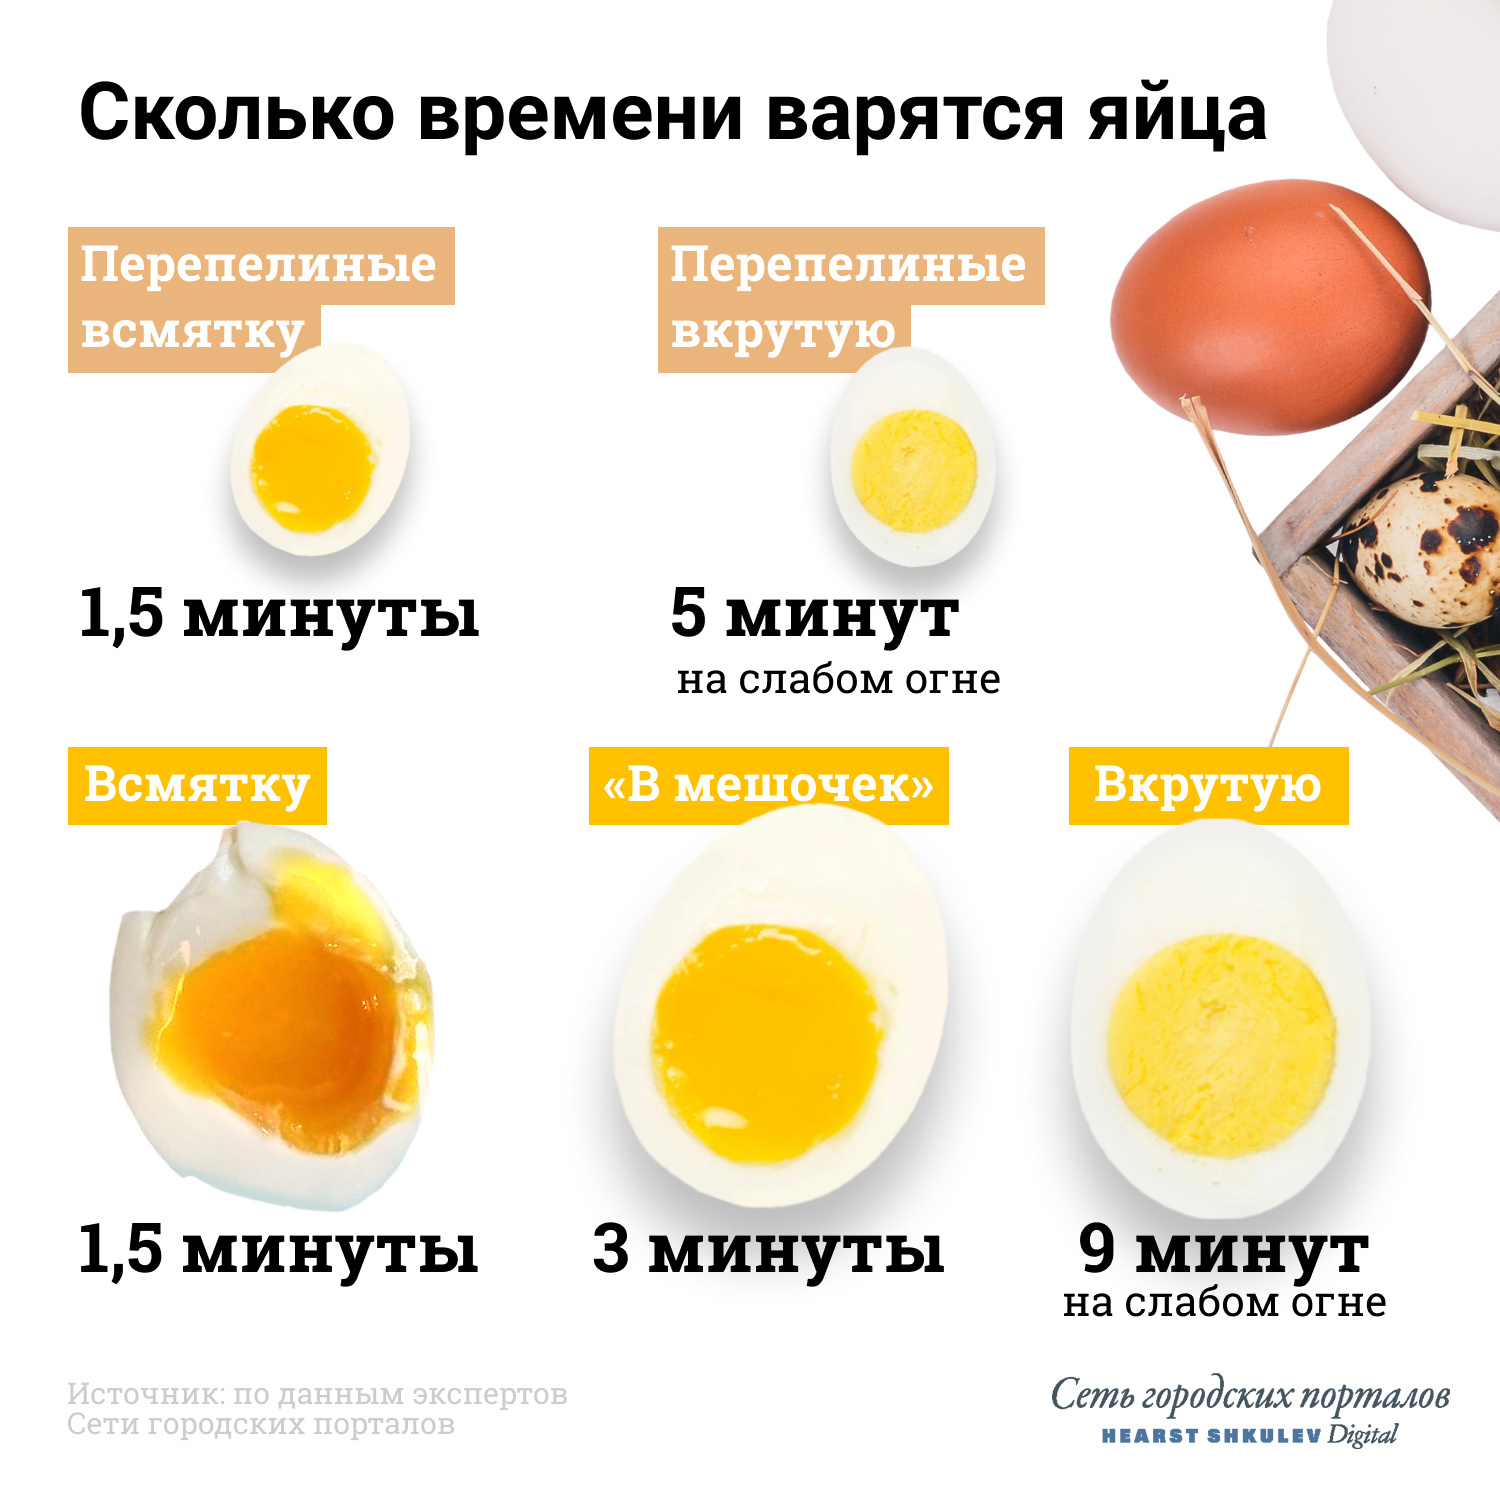 При гастрите можно яйца вареные. Яйцо всмятку яйца вкрутую. Яйца всмятку в мешочек и вкрутую. Сколько варить яйца. Сколько варить яйца всмятку.